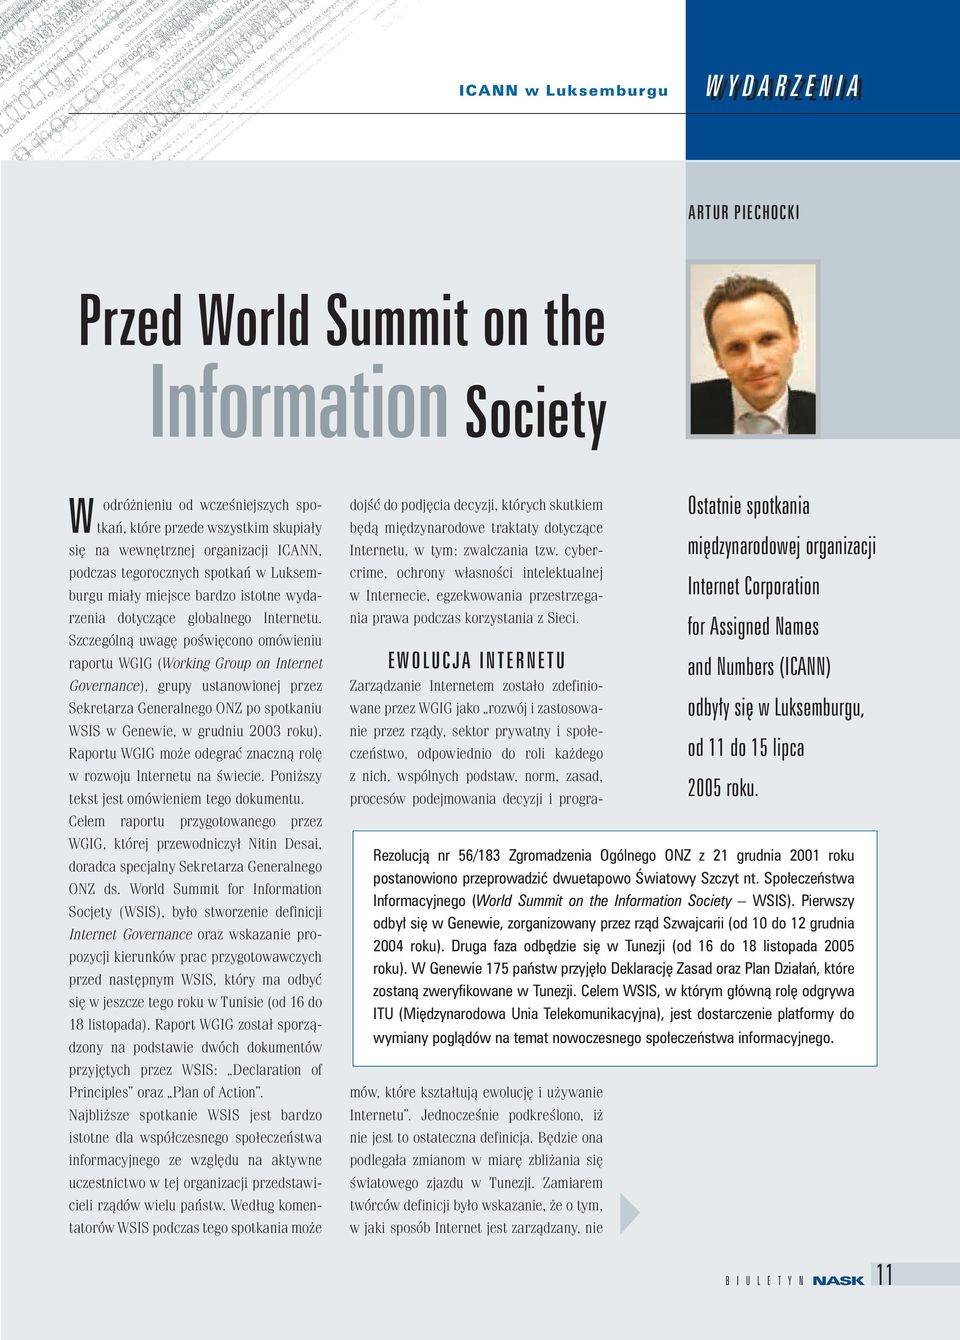 Szczególną uwagę poświęcono omówieniu raportu WGIG (Working Group on Internet Governance), grupy ustanowionej przez Sekretarza Generalnego ONZ po spotkaniu WSIS w Genewie, w grudniu 2003 roku).